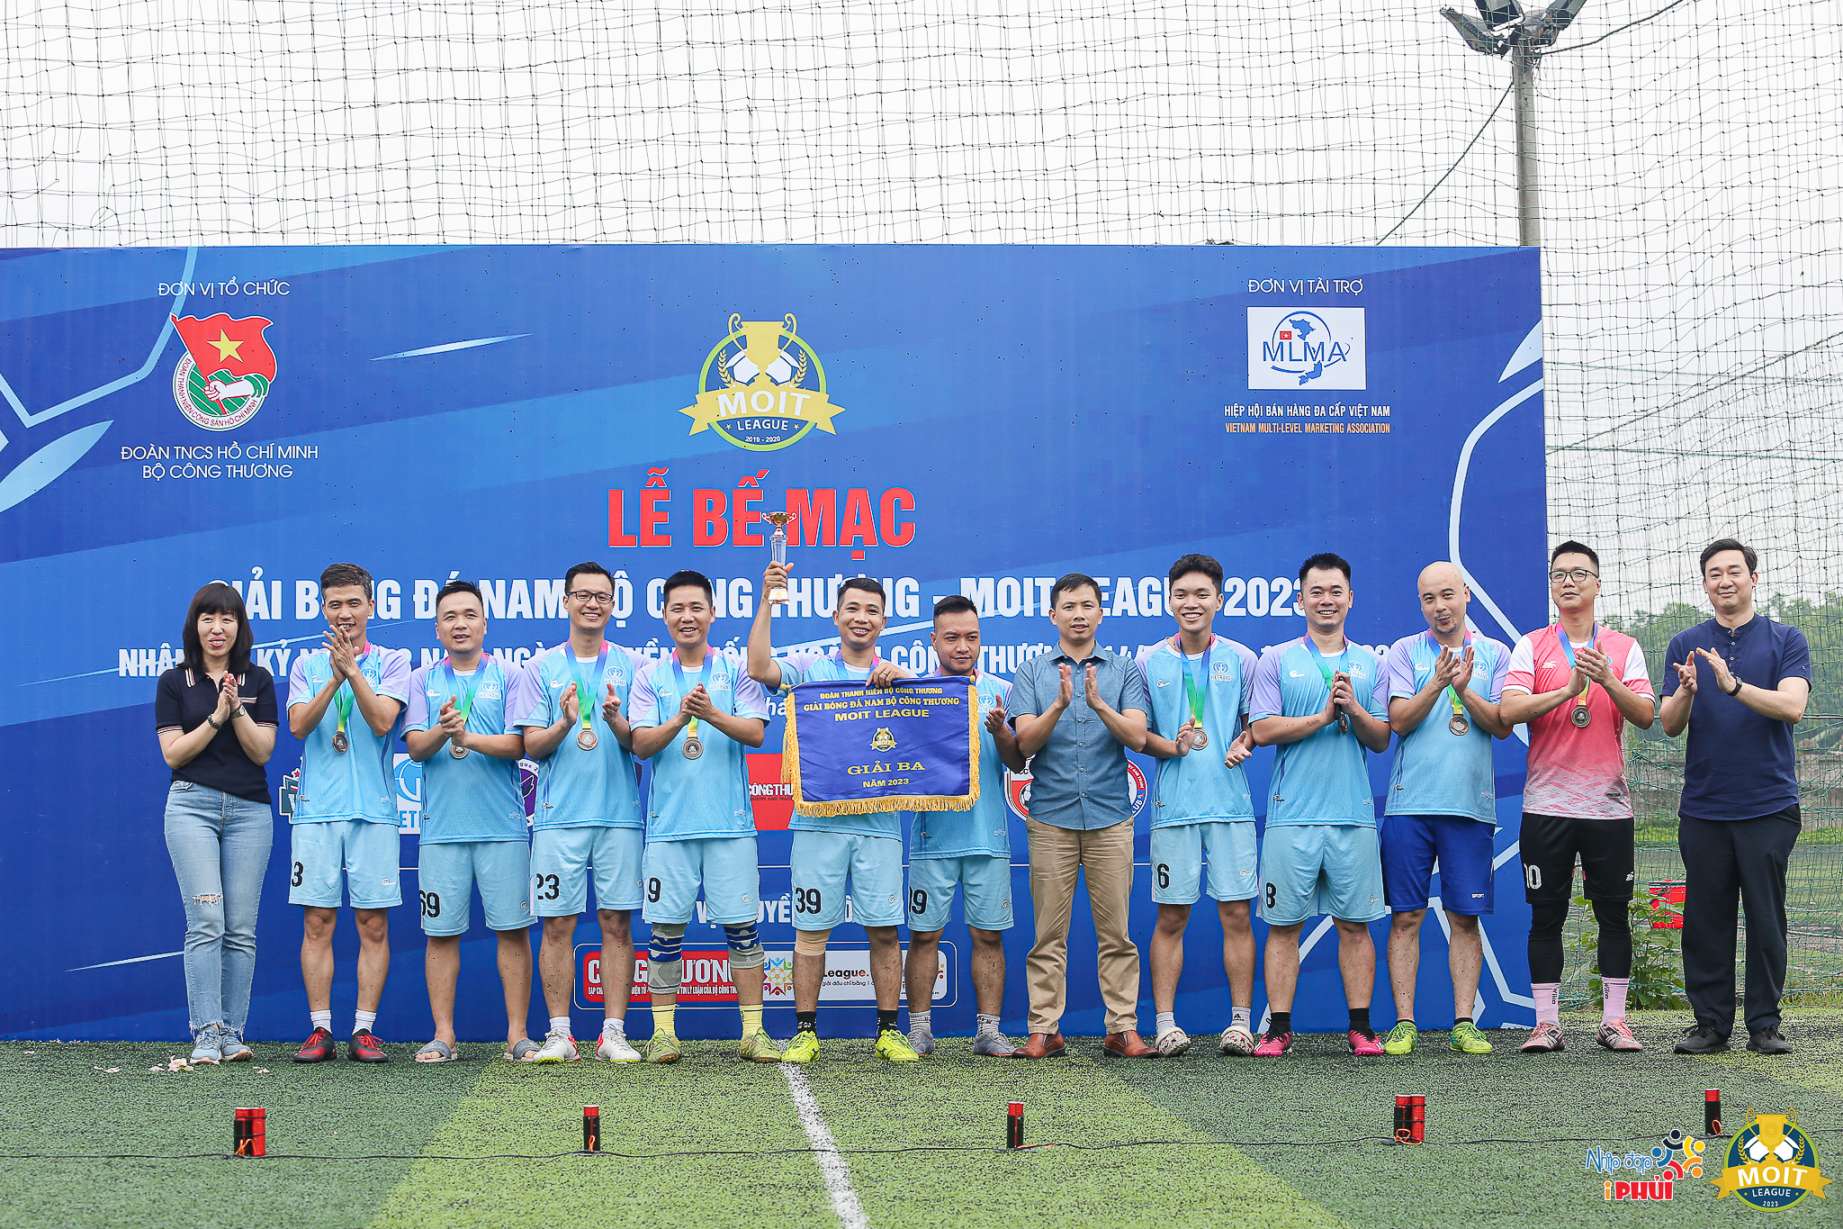 Đội Vietrans nhận cúp Đồng với vị trí thứ 3 toàn Giải